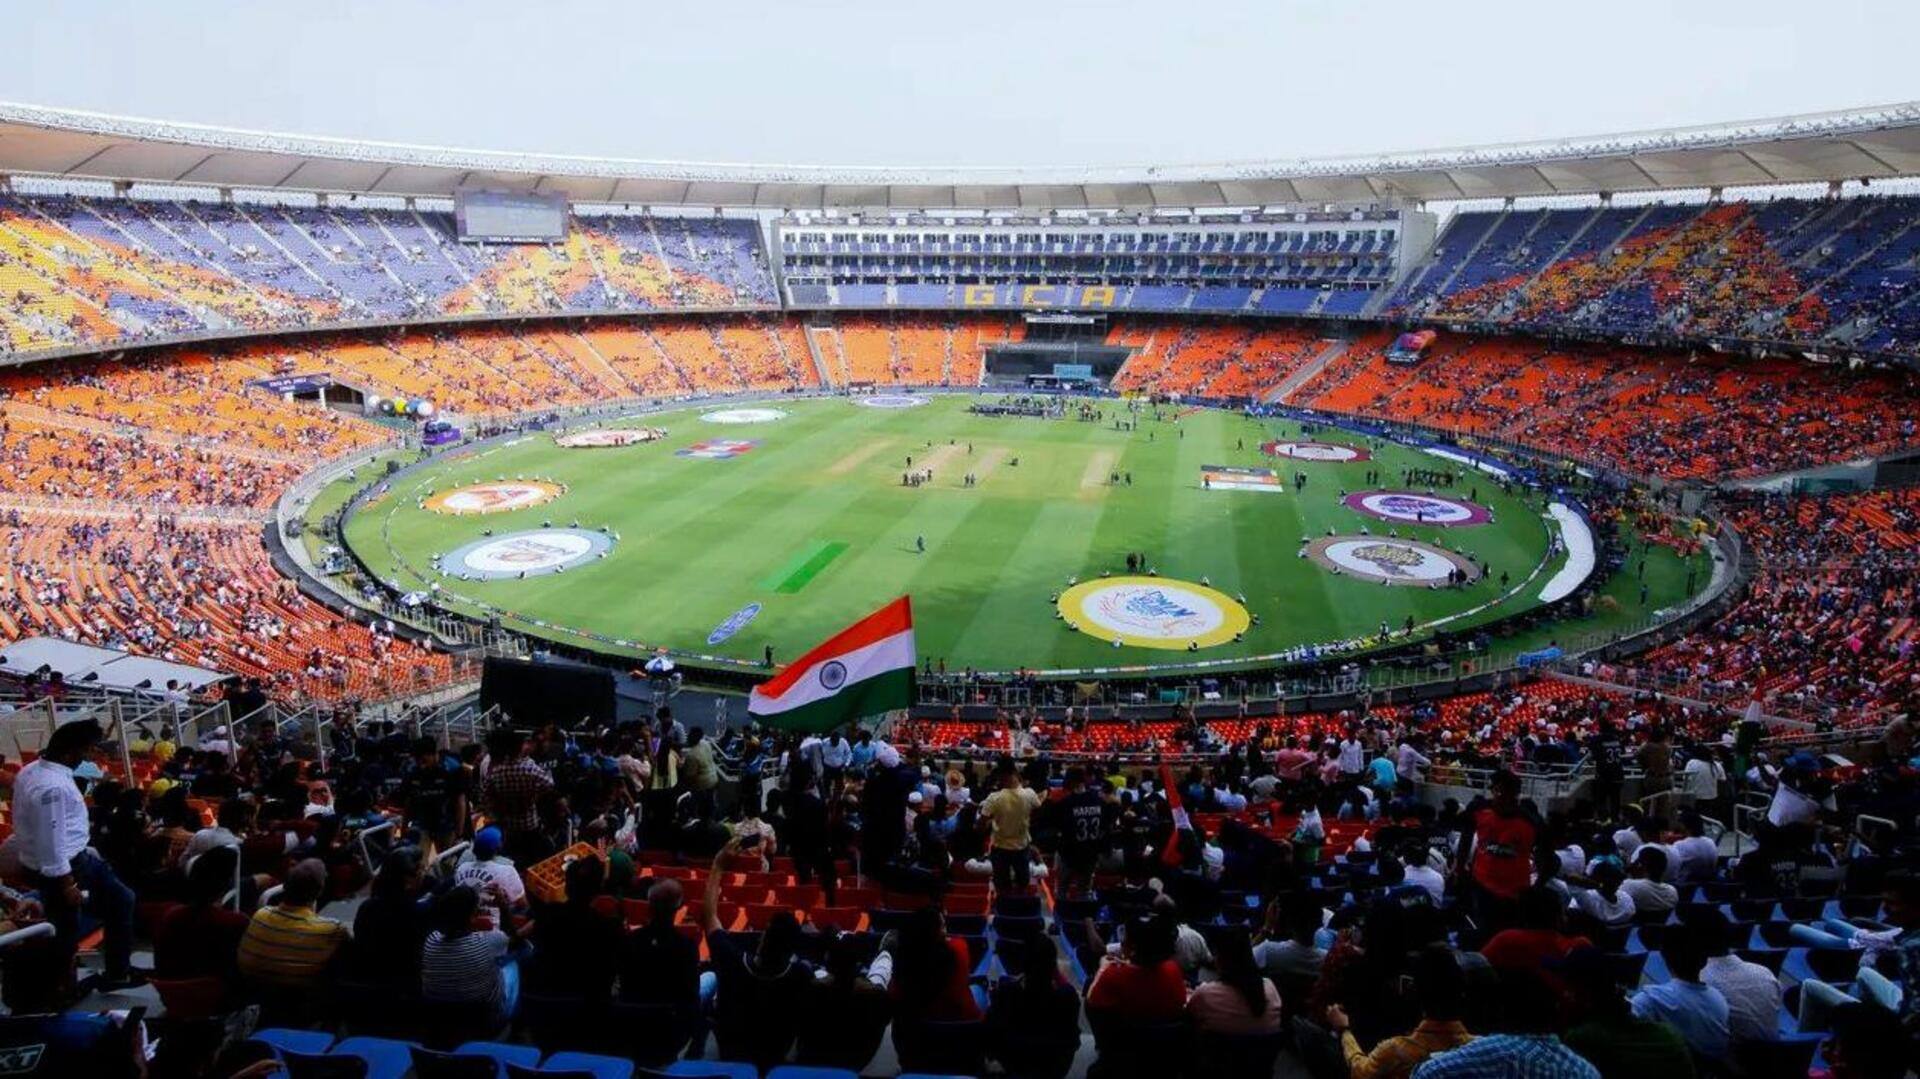 विश्व कप: नरेंद्र मोदी स्टेडियम में 4 सितंबर को होगा उद्धाटन समारोह, कई मेहमान होंगे शामिल